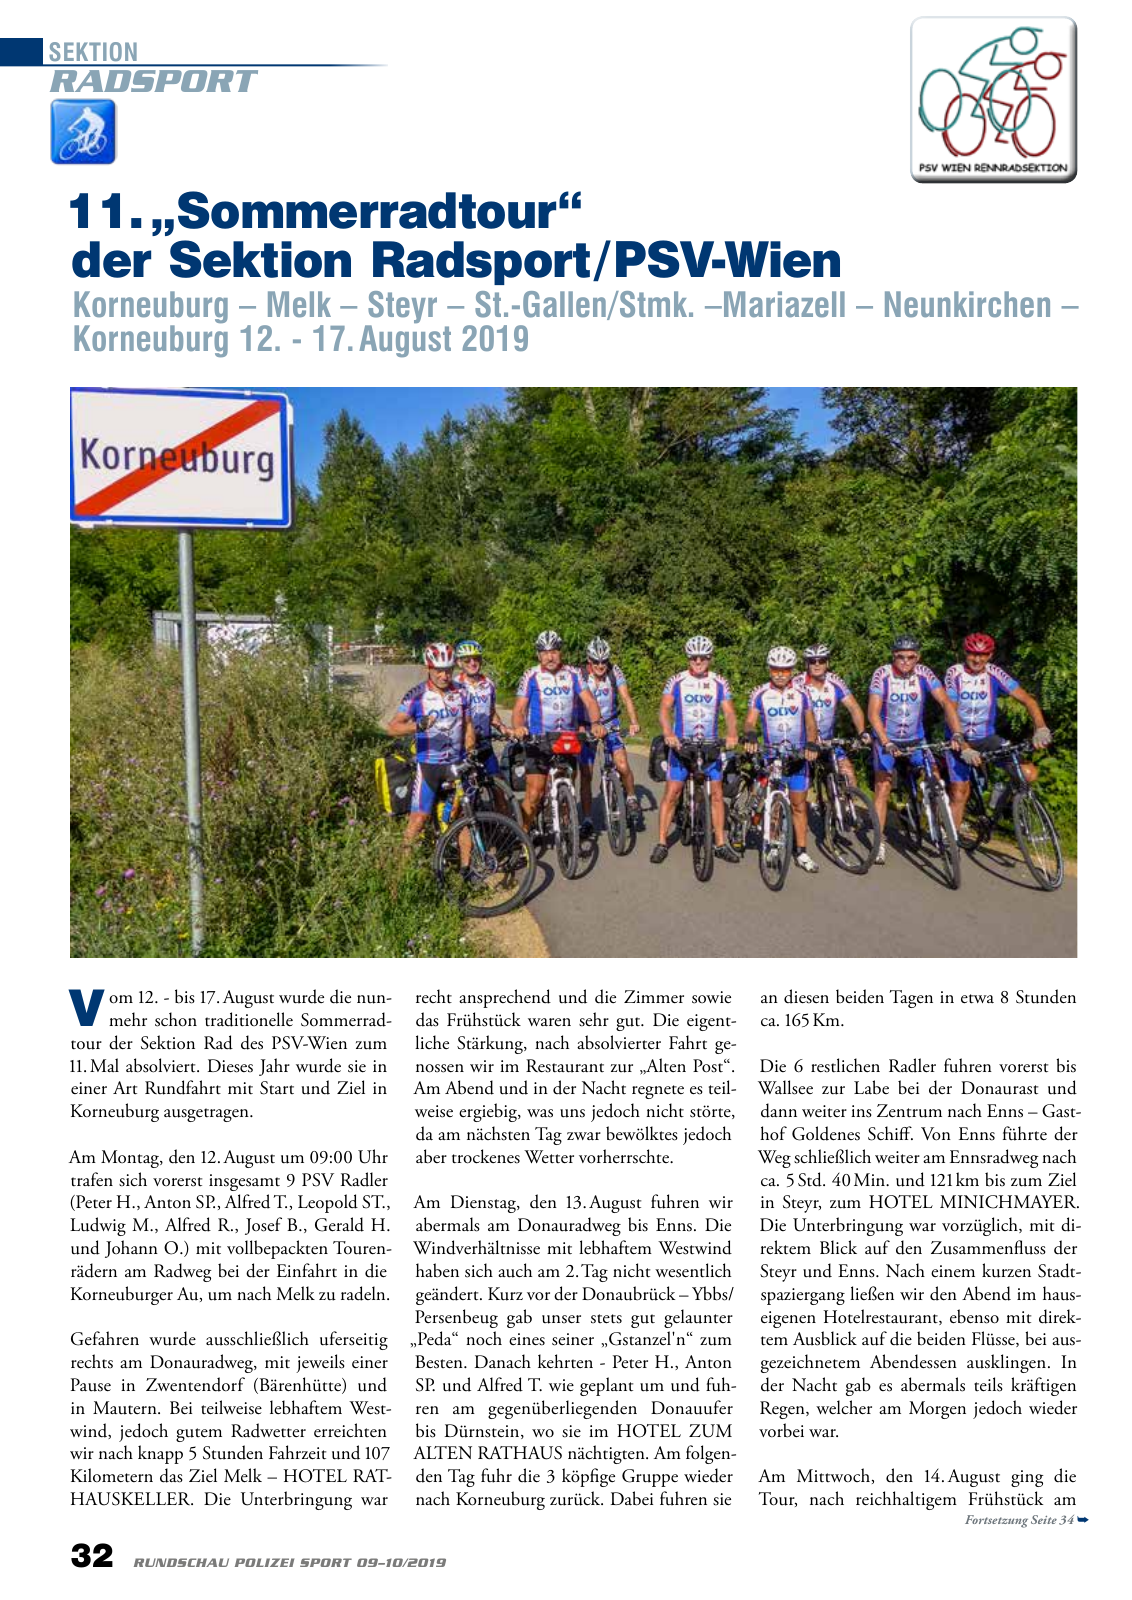 Vorschau Rundschau Polizei Sport 09-10/2019 Seite 32